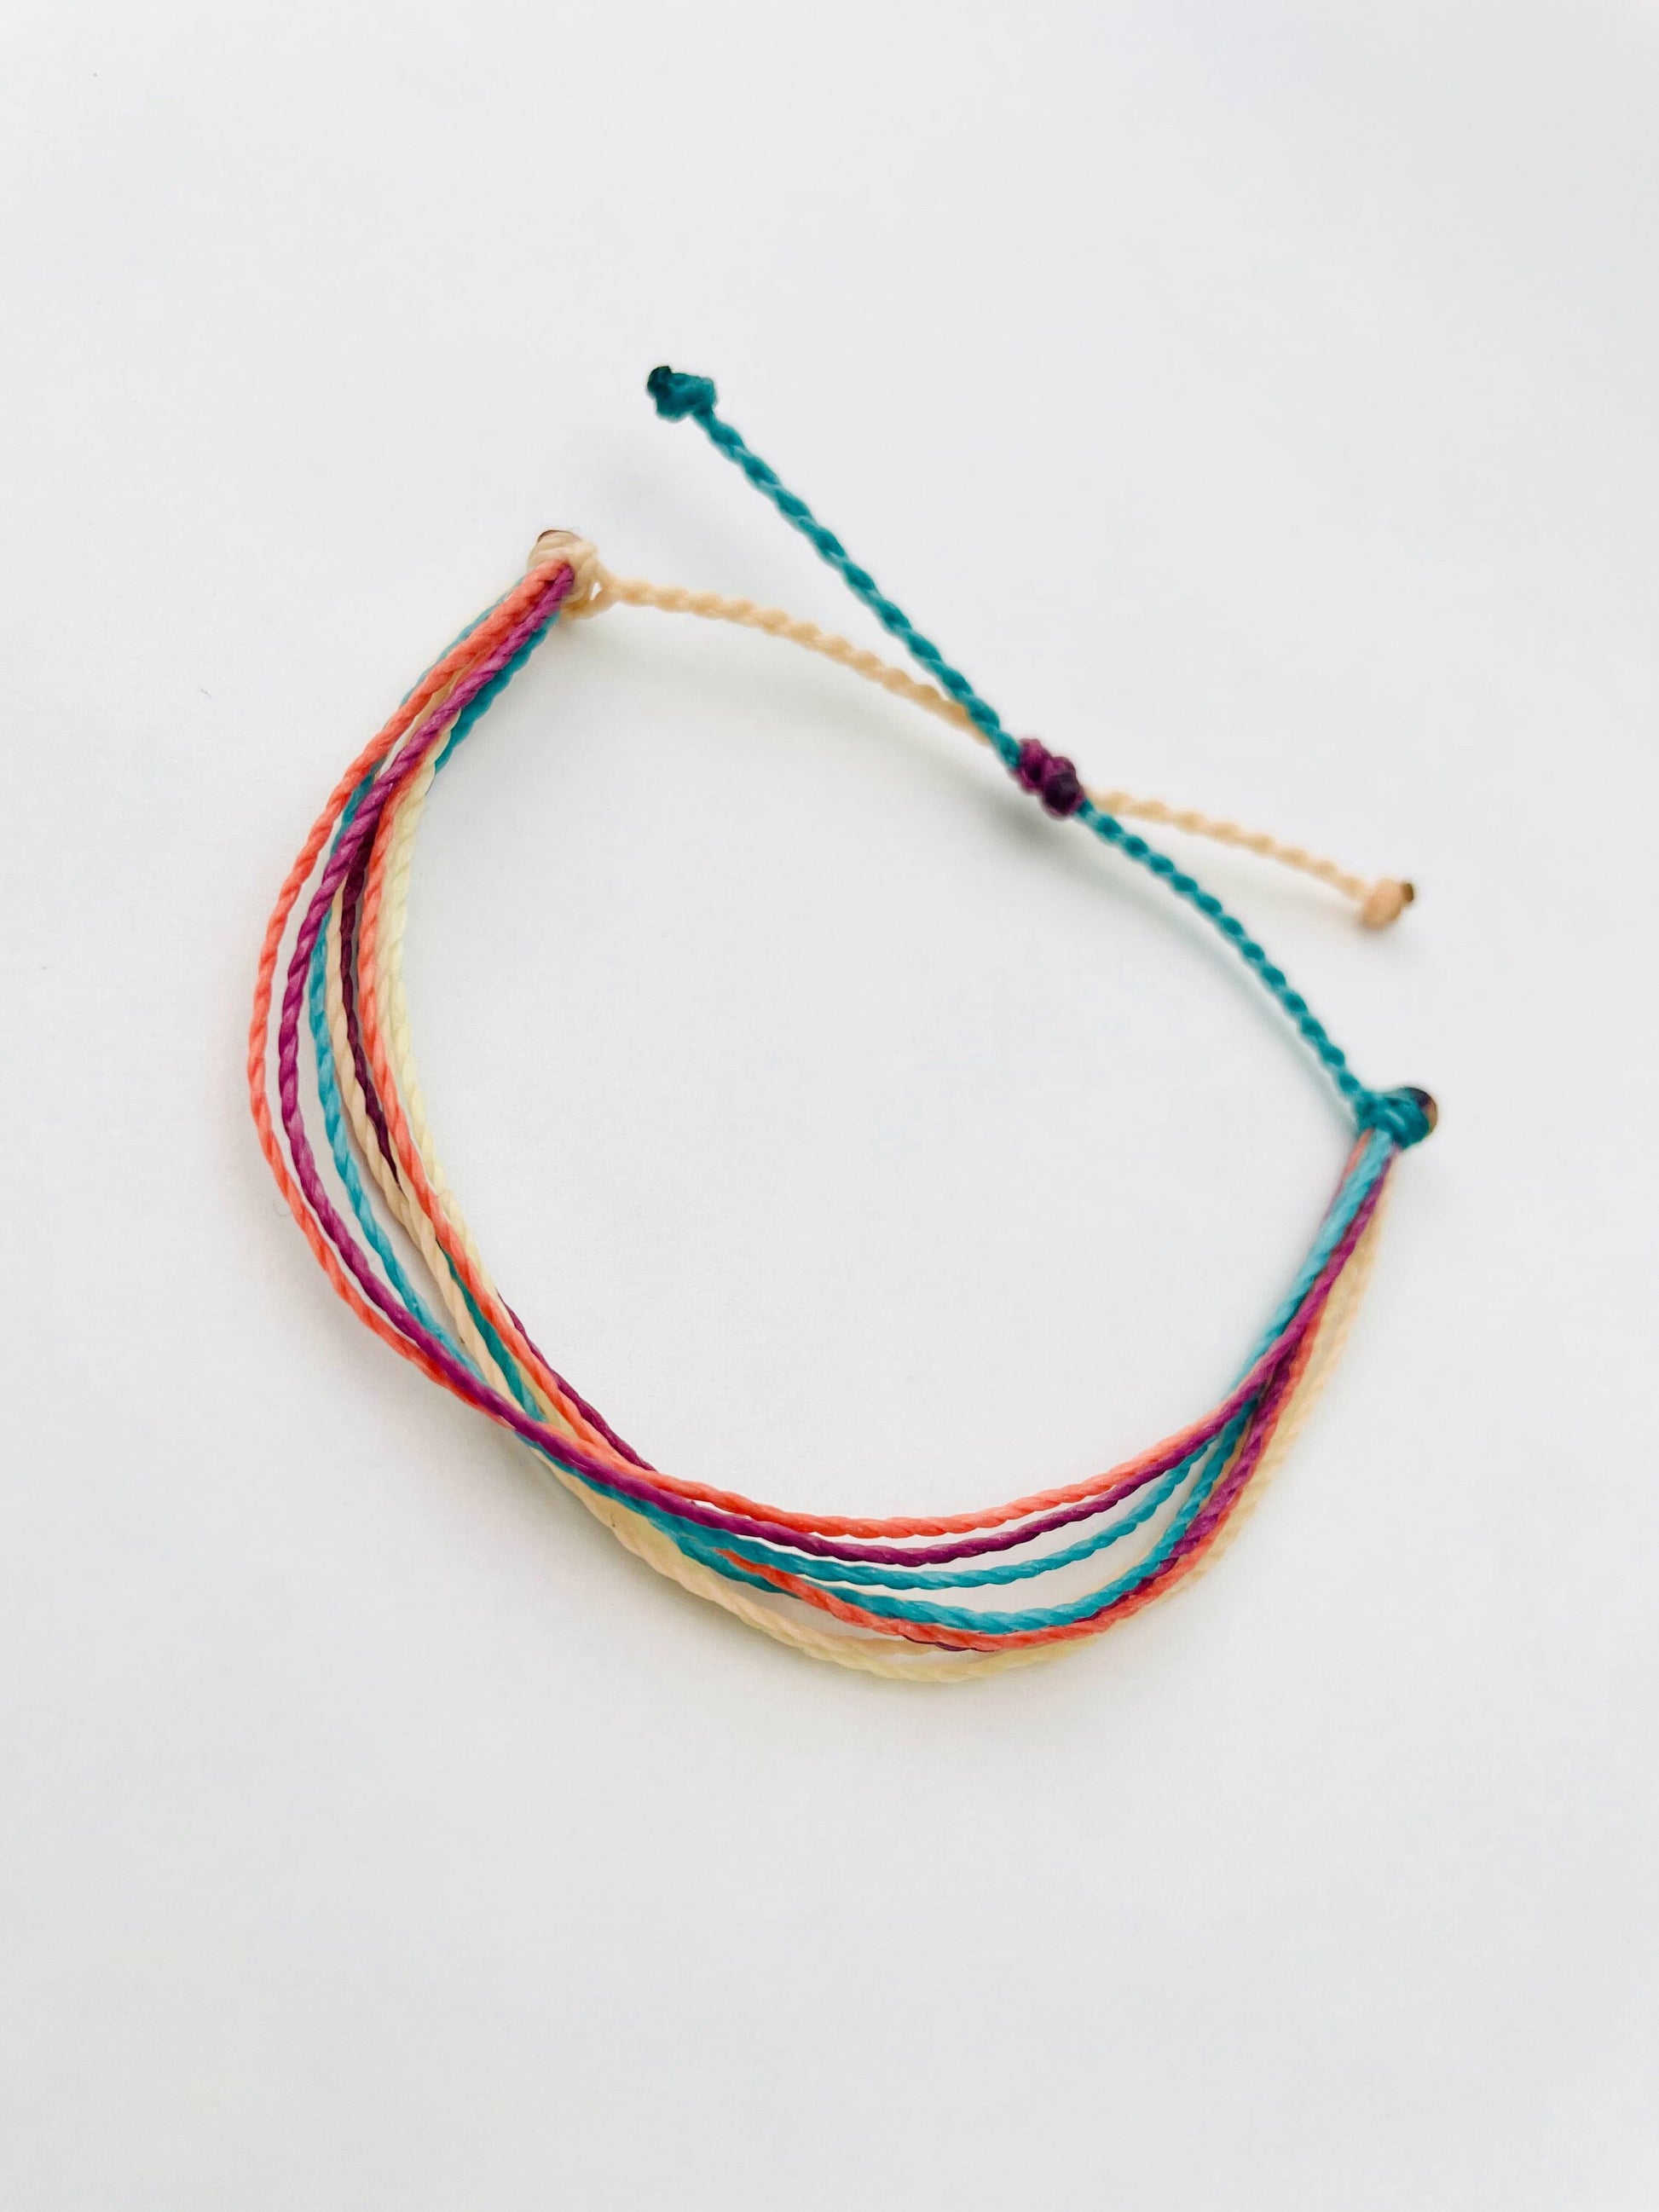 String Bracelet, Adjustable Bracelet, Colorful Bracelet, Thread Bracelet, Waterproof, Handmade Bracelet